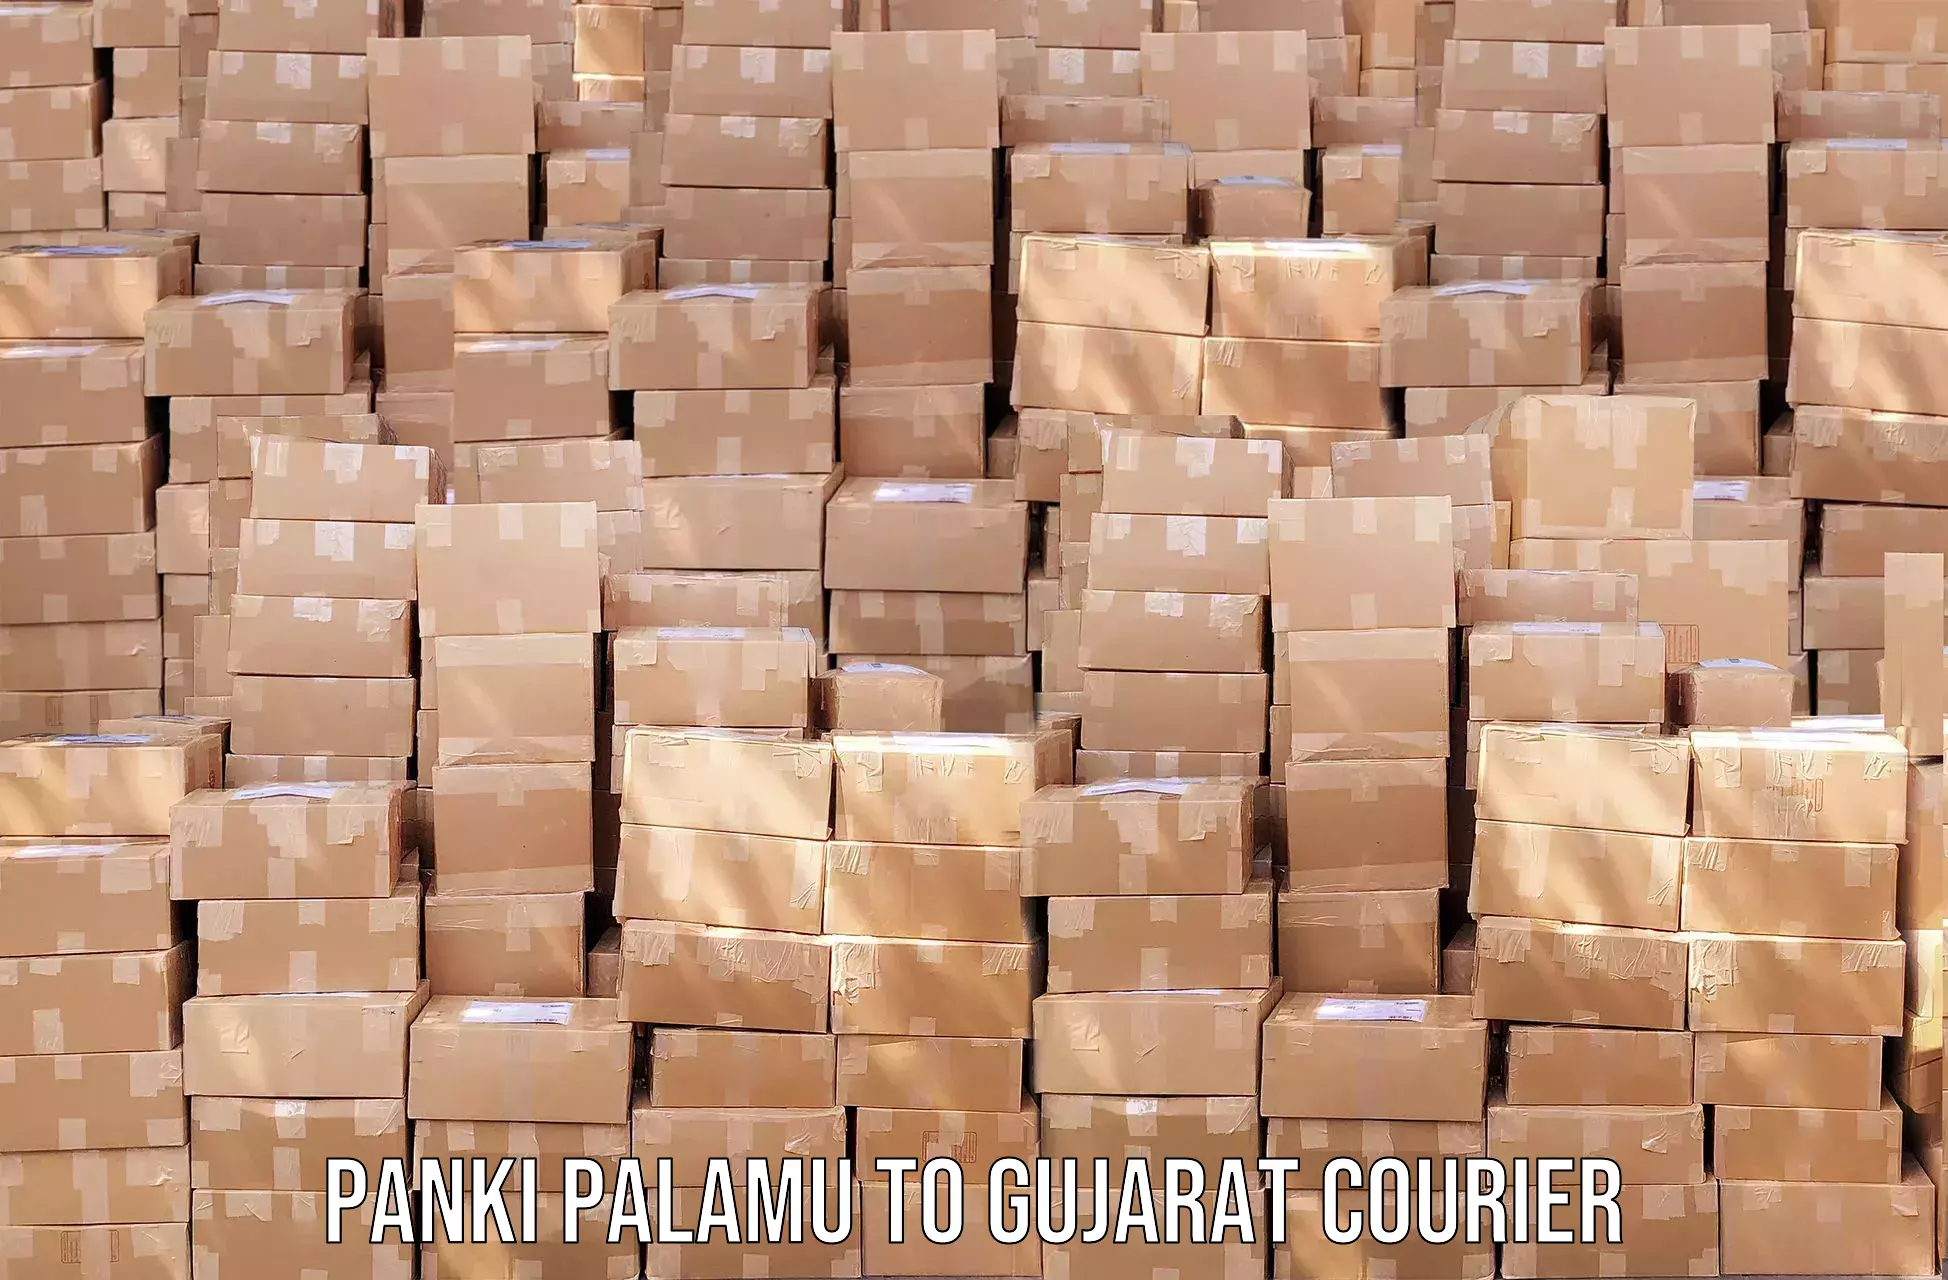 Global logistics network Panki Palamu to Gujarat